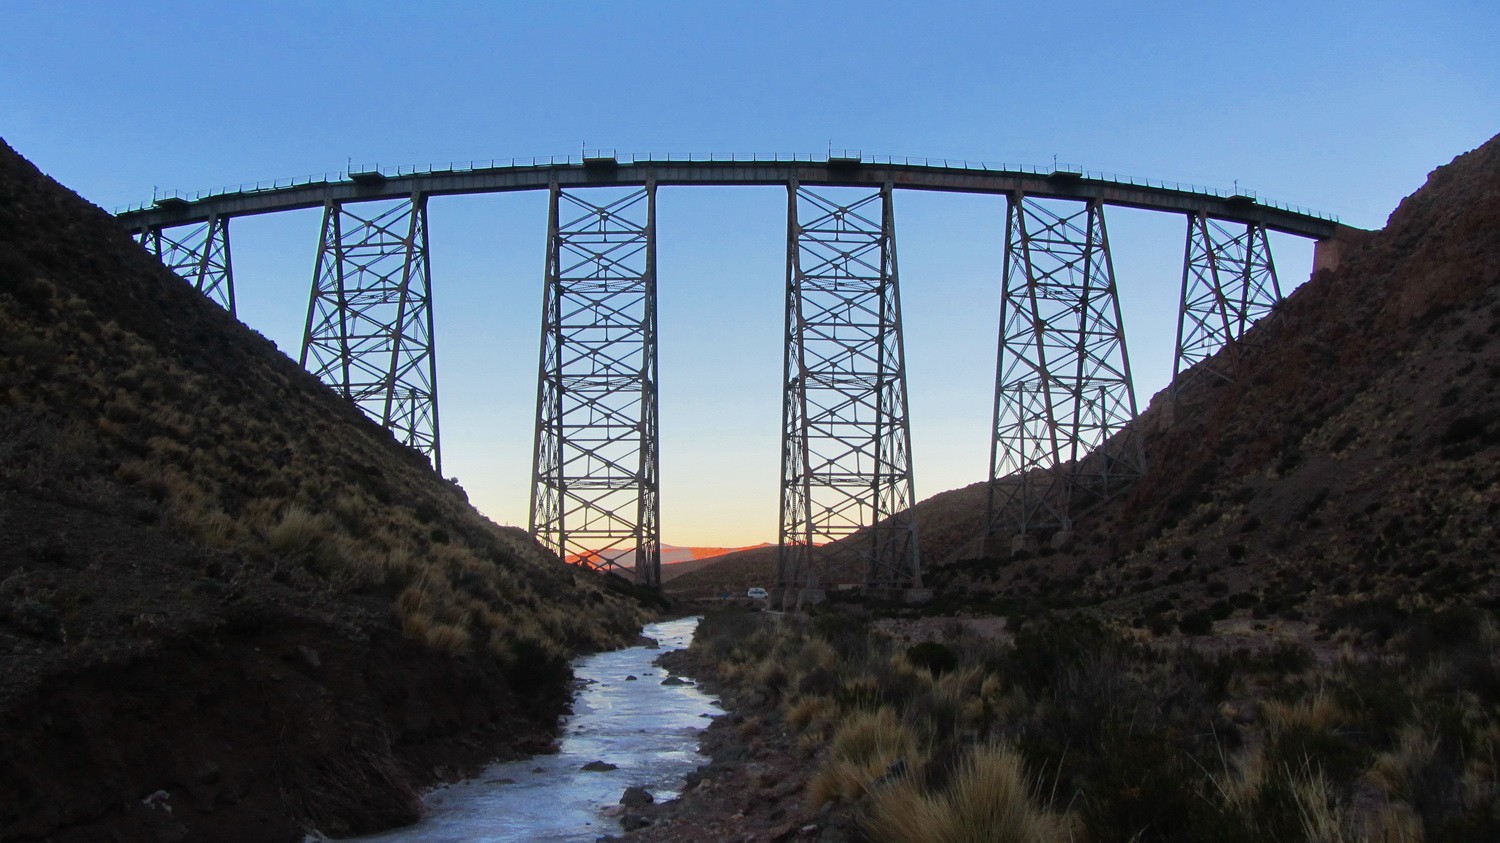 Railway bridge Viaducto La Polvorilla 20 km West of San Antonio de los Cobres with frozen stream at sunrise